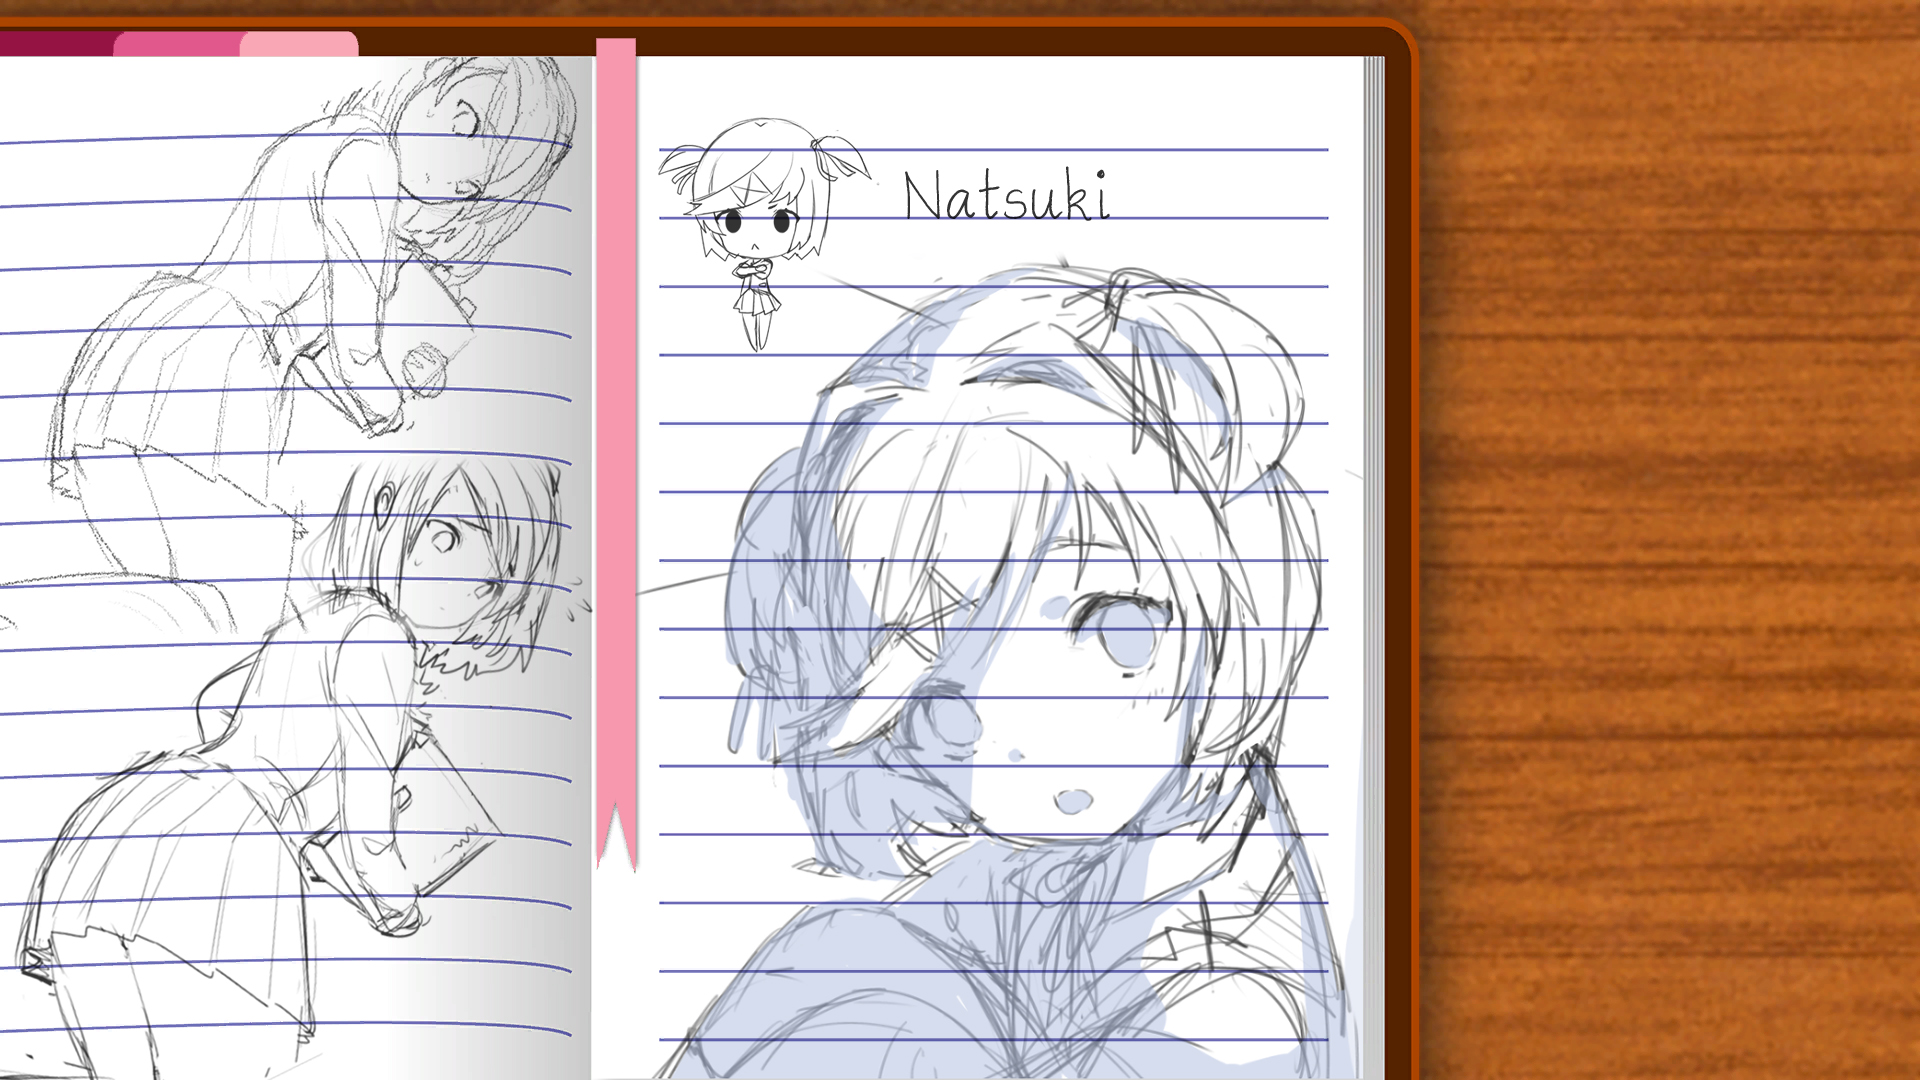 Natsuki notebook